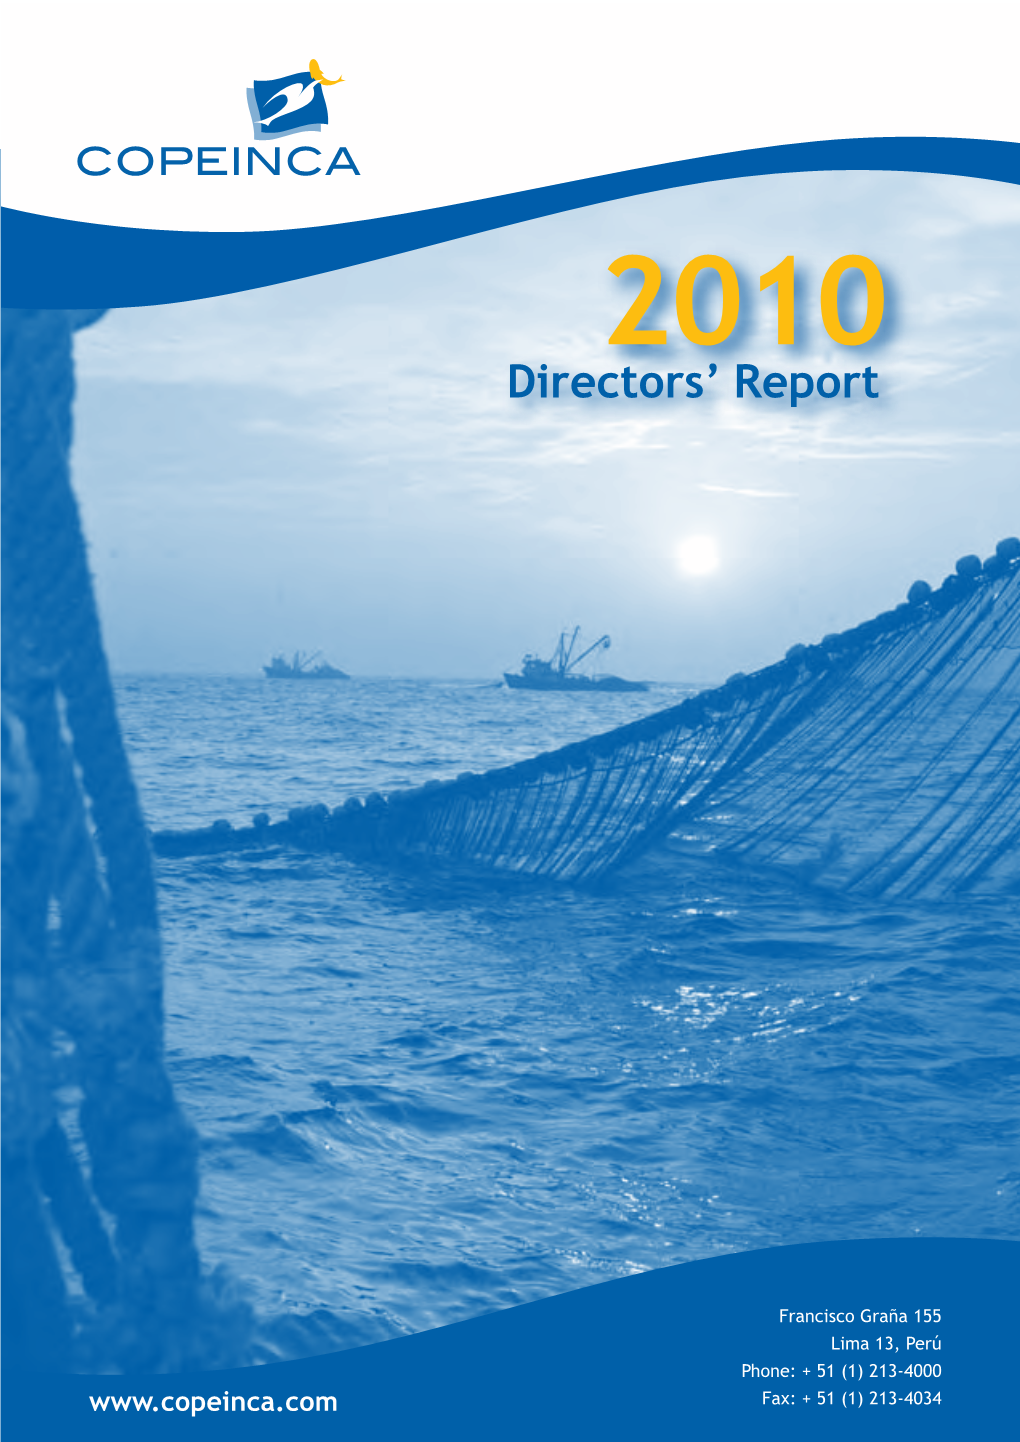 Directors' Report Directors' Report